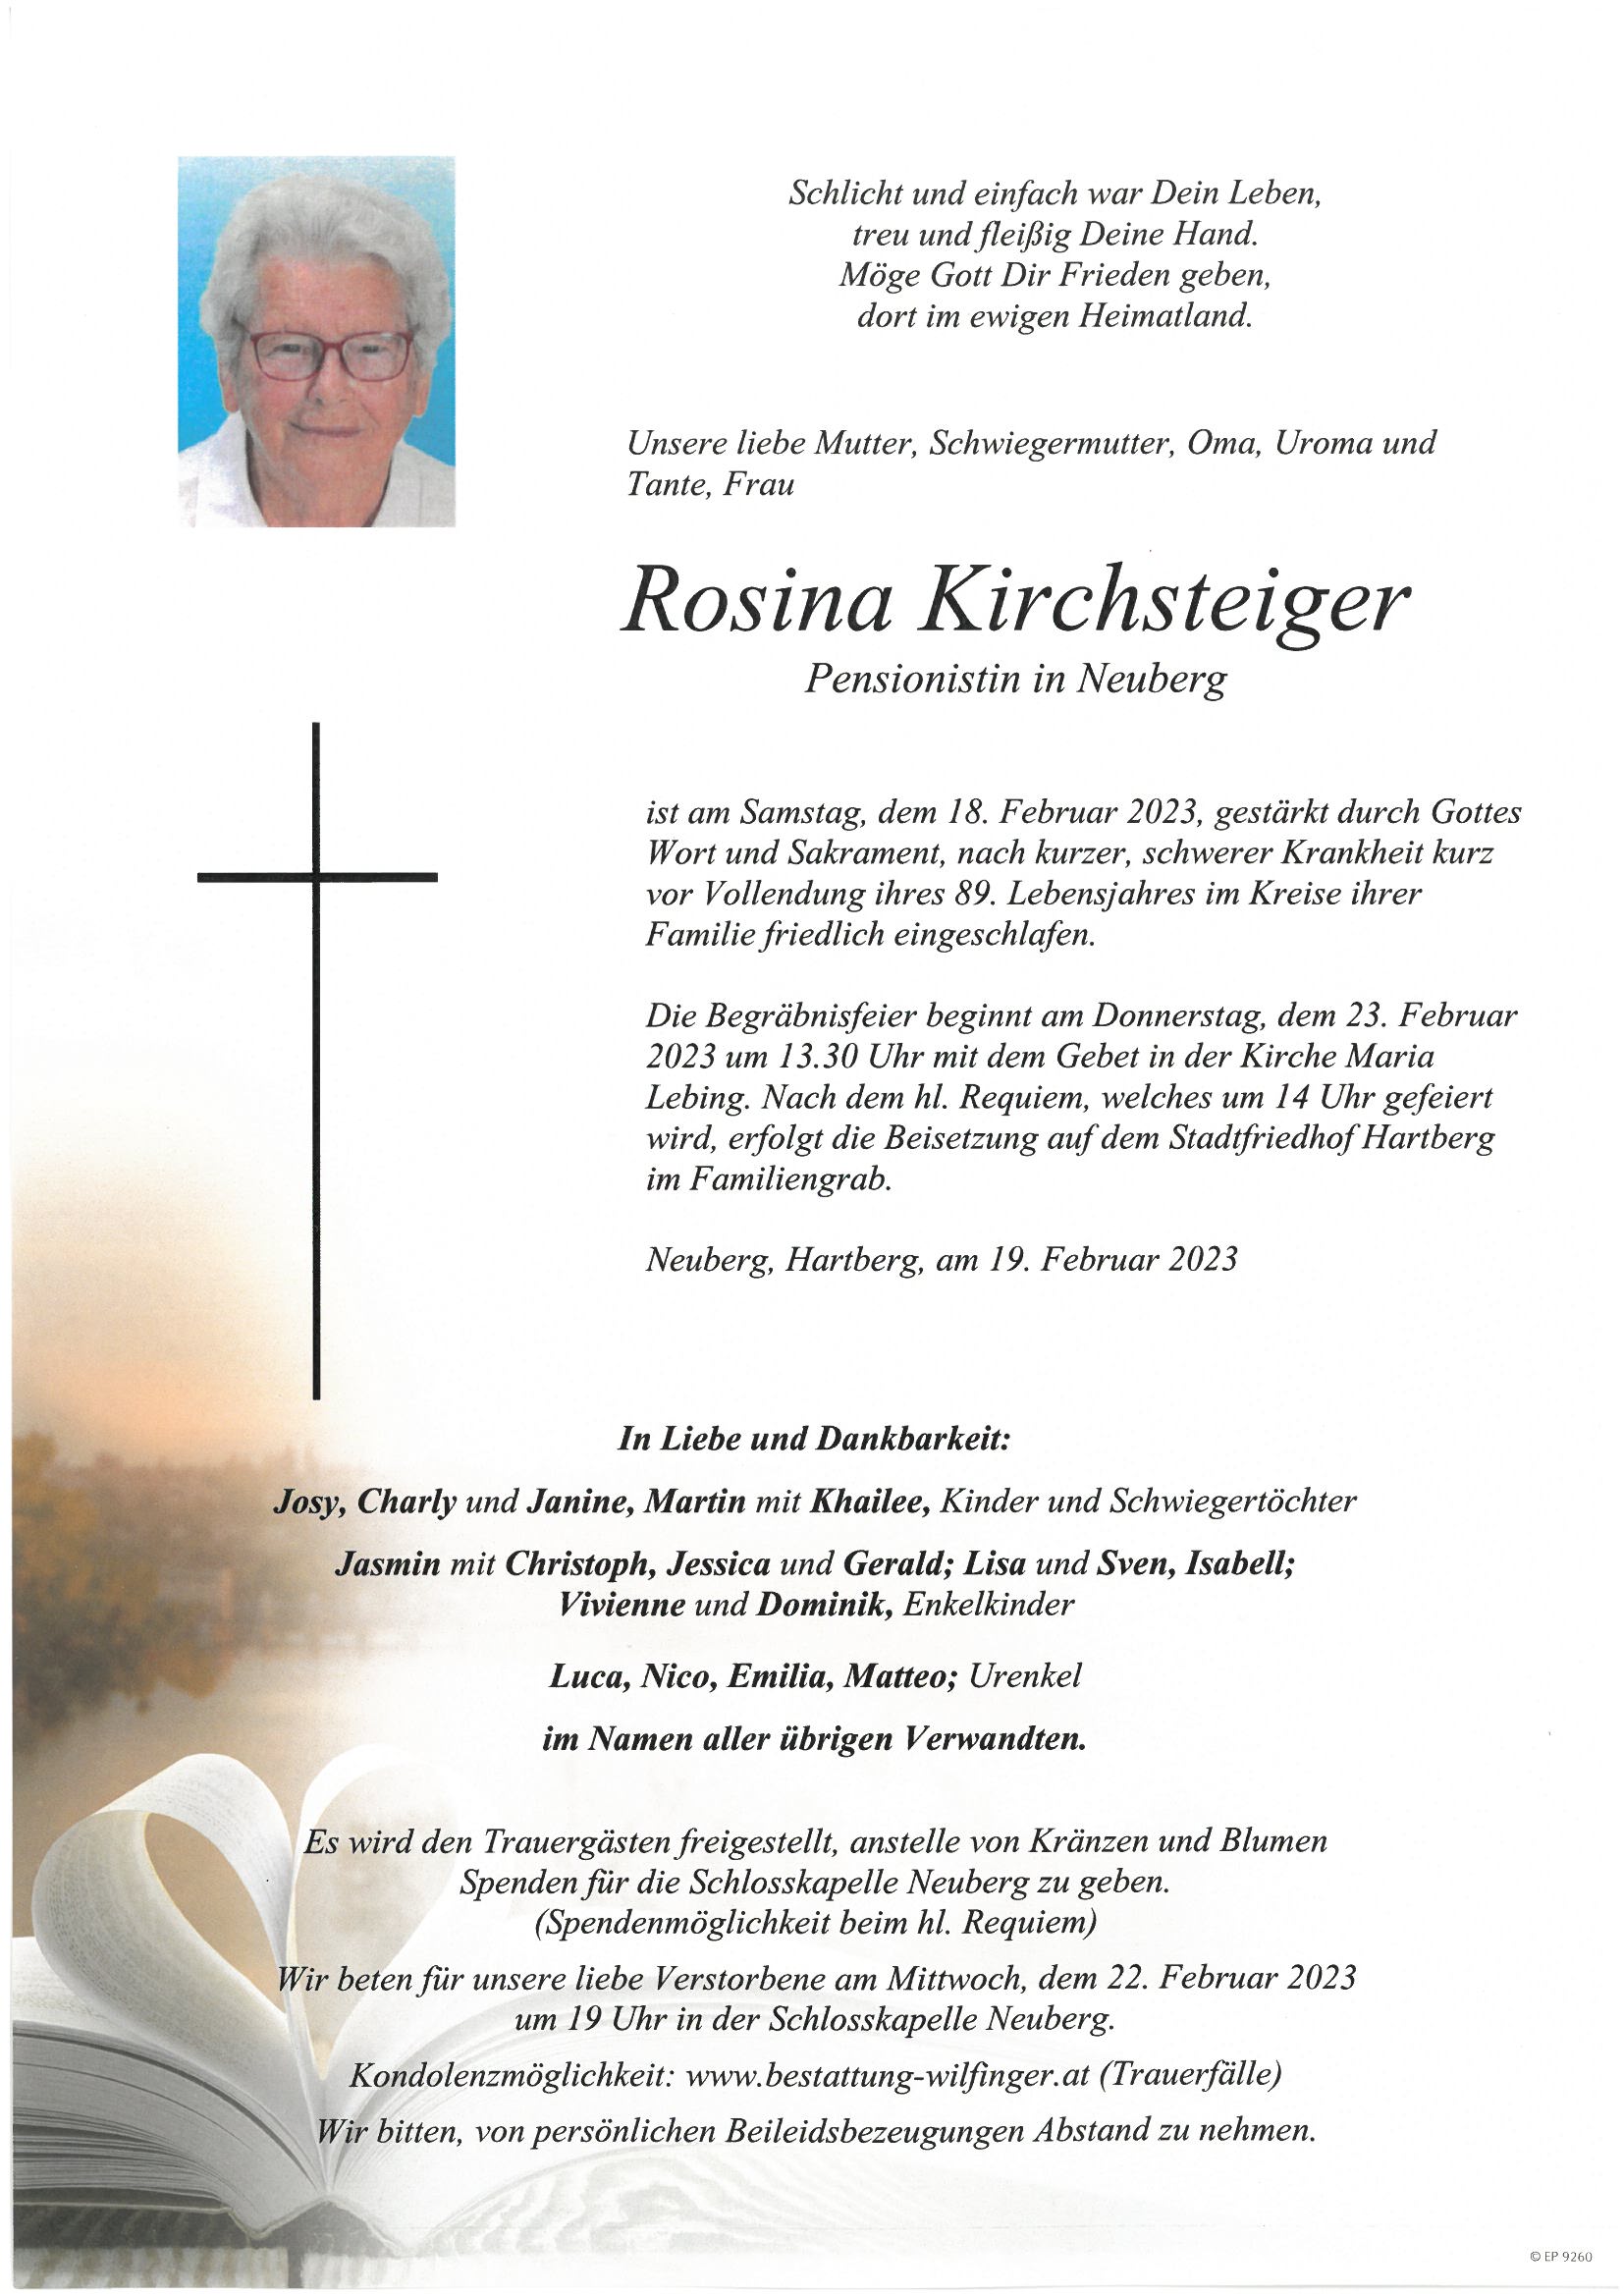 Rosina Kirchsteiger, Neuberg